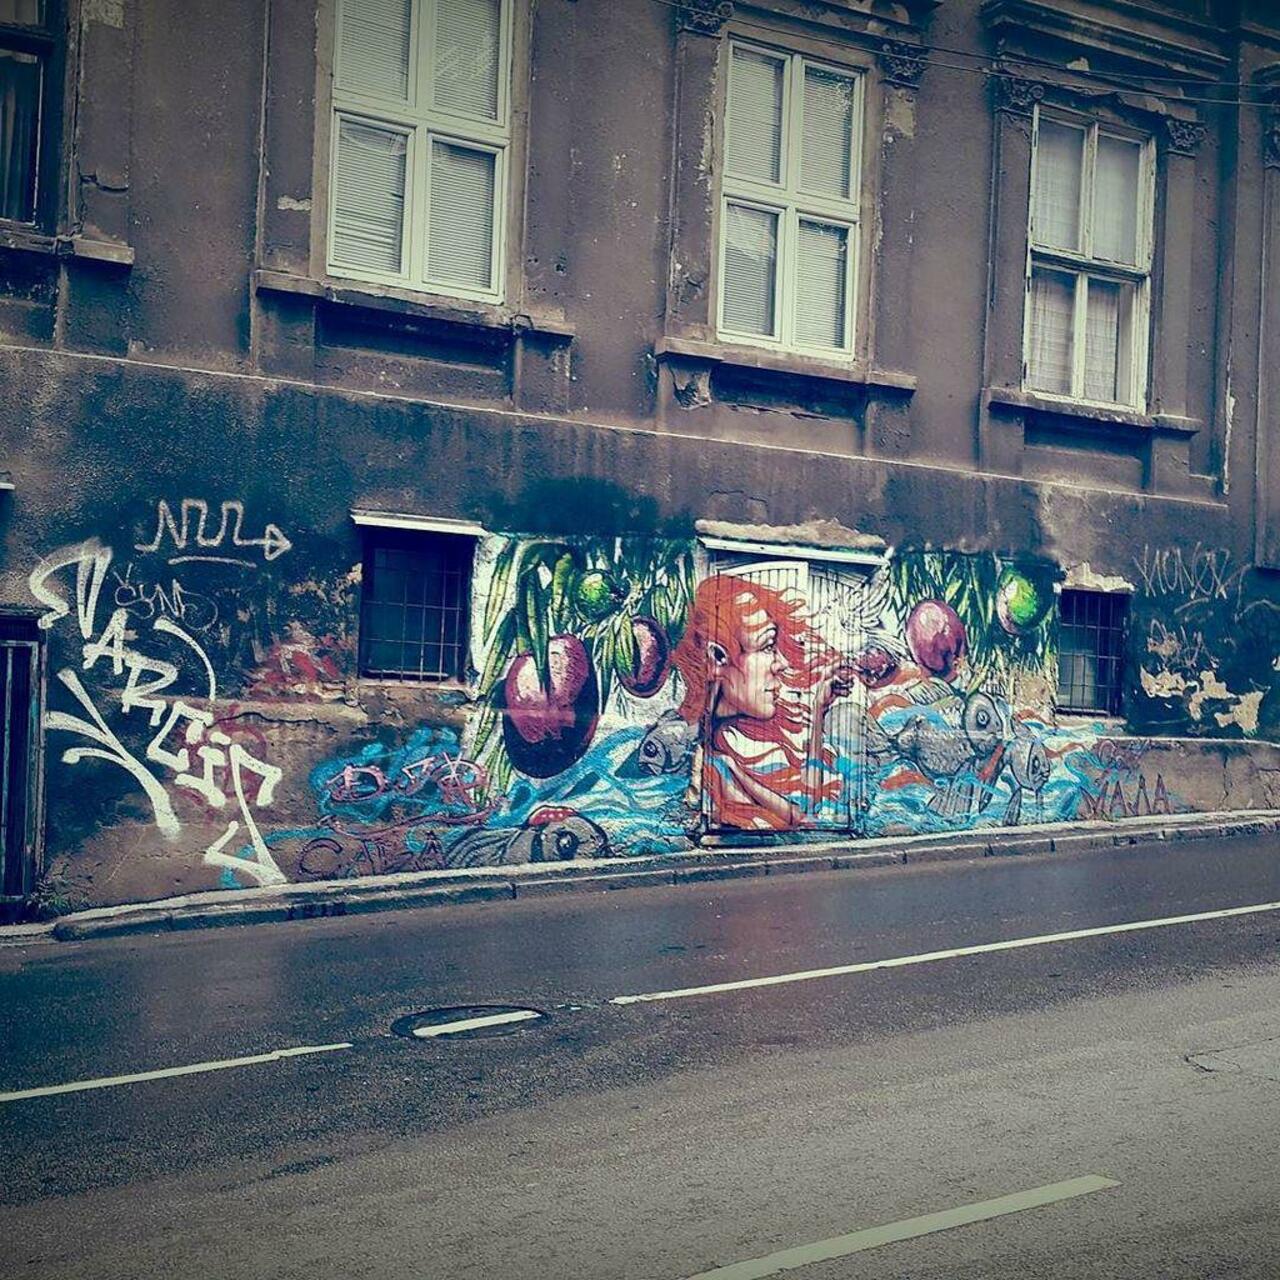 RT @artpushr: via #shoeb.rahman "http://bit.ly/1OmJNA3" #graffiti #streetart http://t.co/Mrdif5aWXr